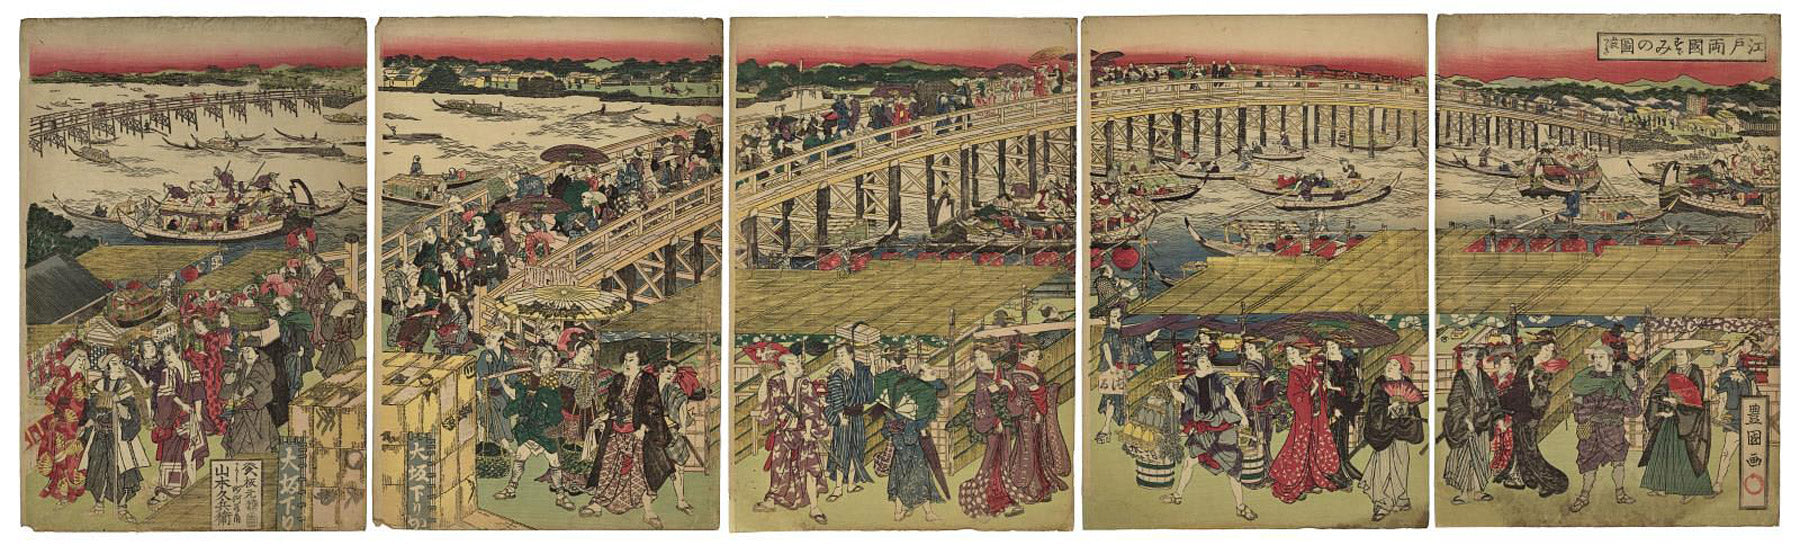 Edoryogoku suzumi no zo gomai tsuzuki (cooling off at Ryogoku bridge in Edo) by Toyokuni I Utagawa